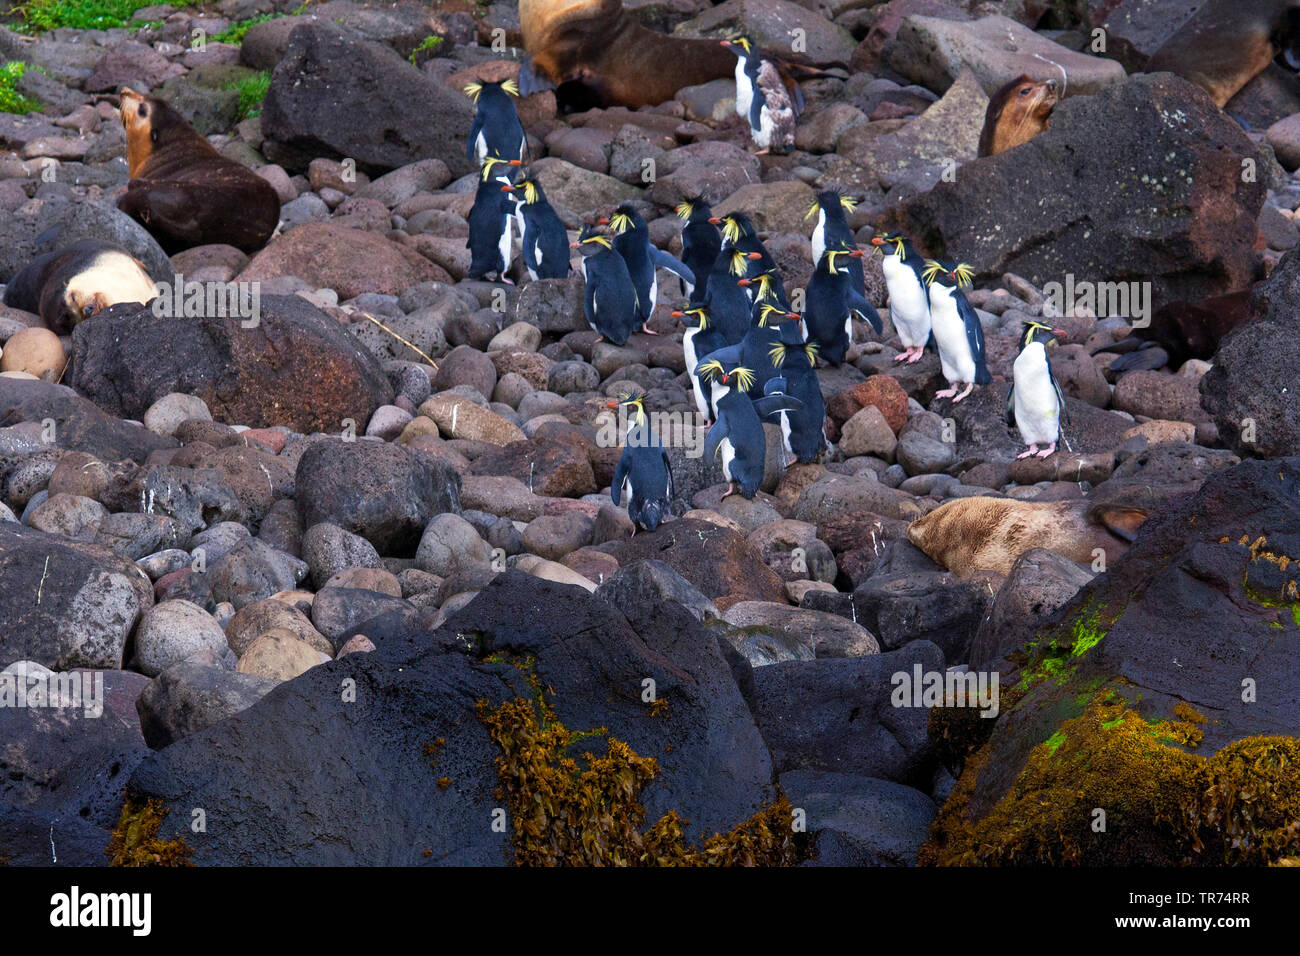 Northern rockhopper penguin, Moseley's rockhopper penguin, Moseley's penguin (Eudyptes moseleyi), on the beach of Gough Island, Tristan da Cunha, Gough Island Stock Photo